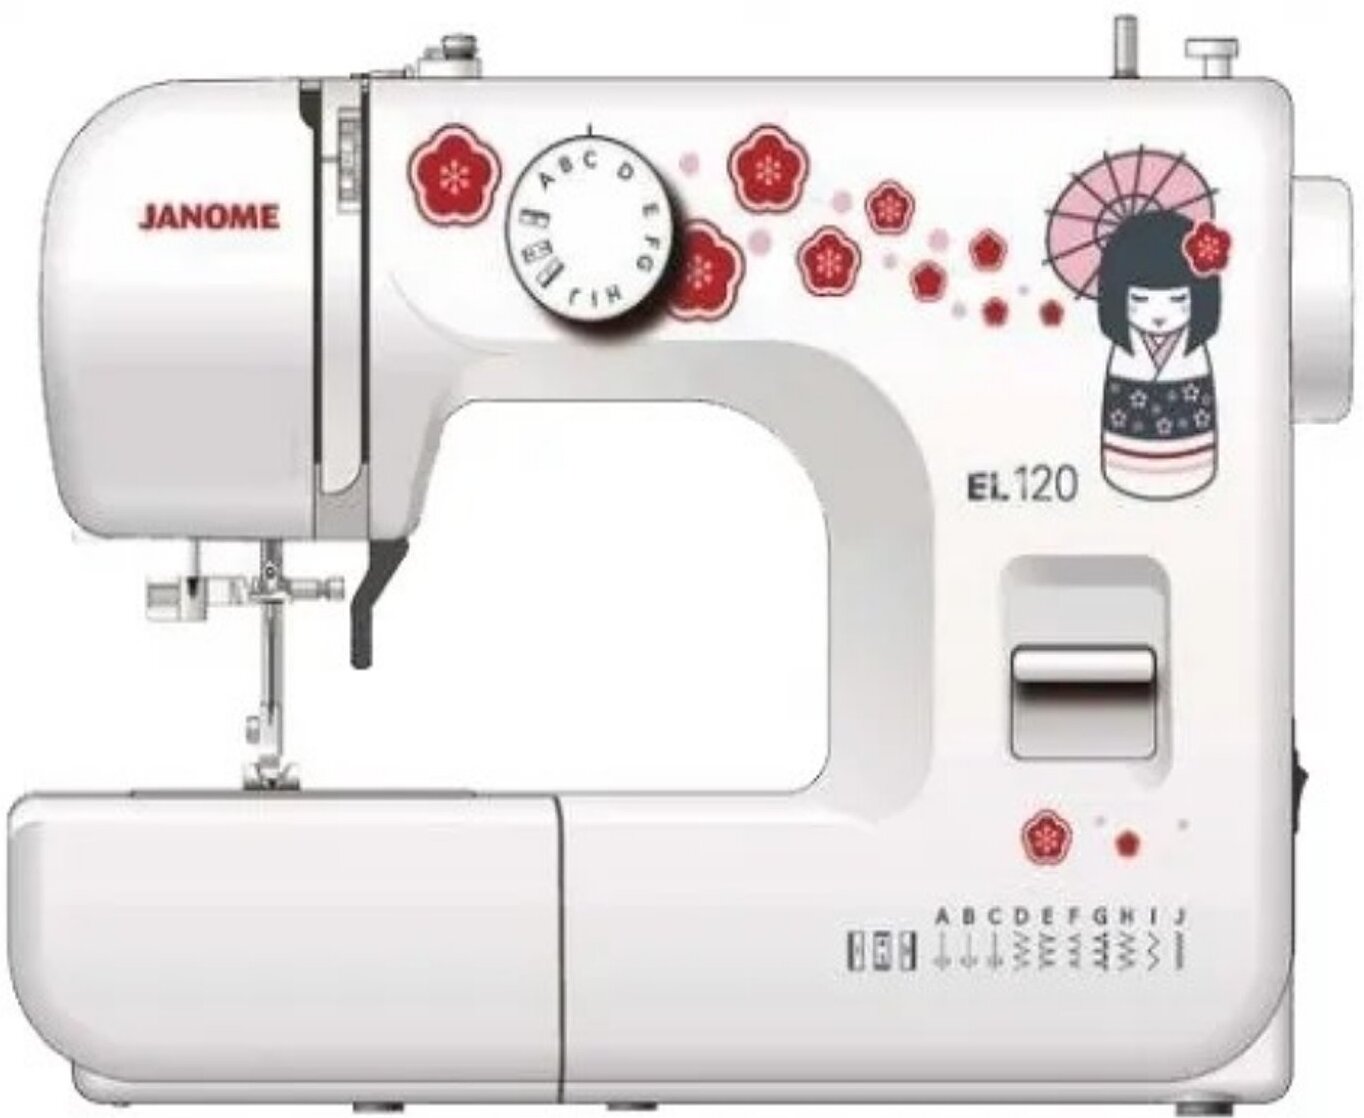 Швейная машинка janome купить в москве. Швейная машина Janome el-120. Швейная машина Janome TC 1216s. Швейная машина Janome sk13. Швейная машина Janome el5465.